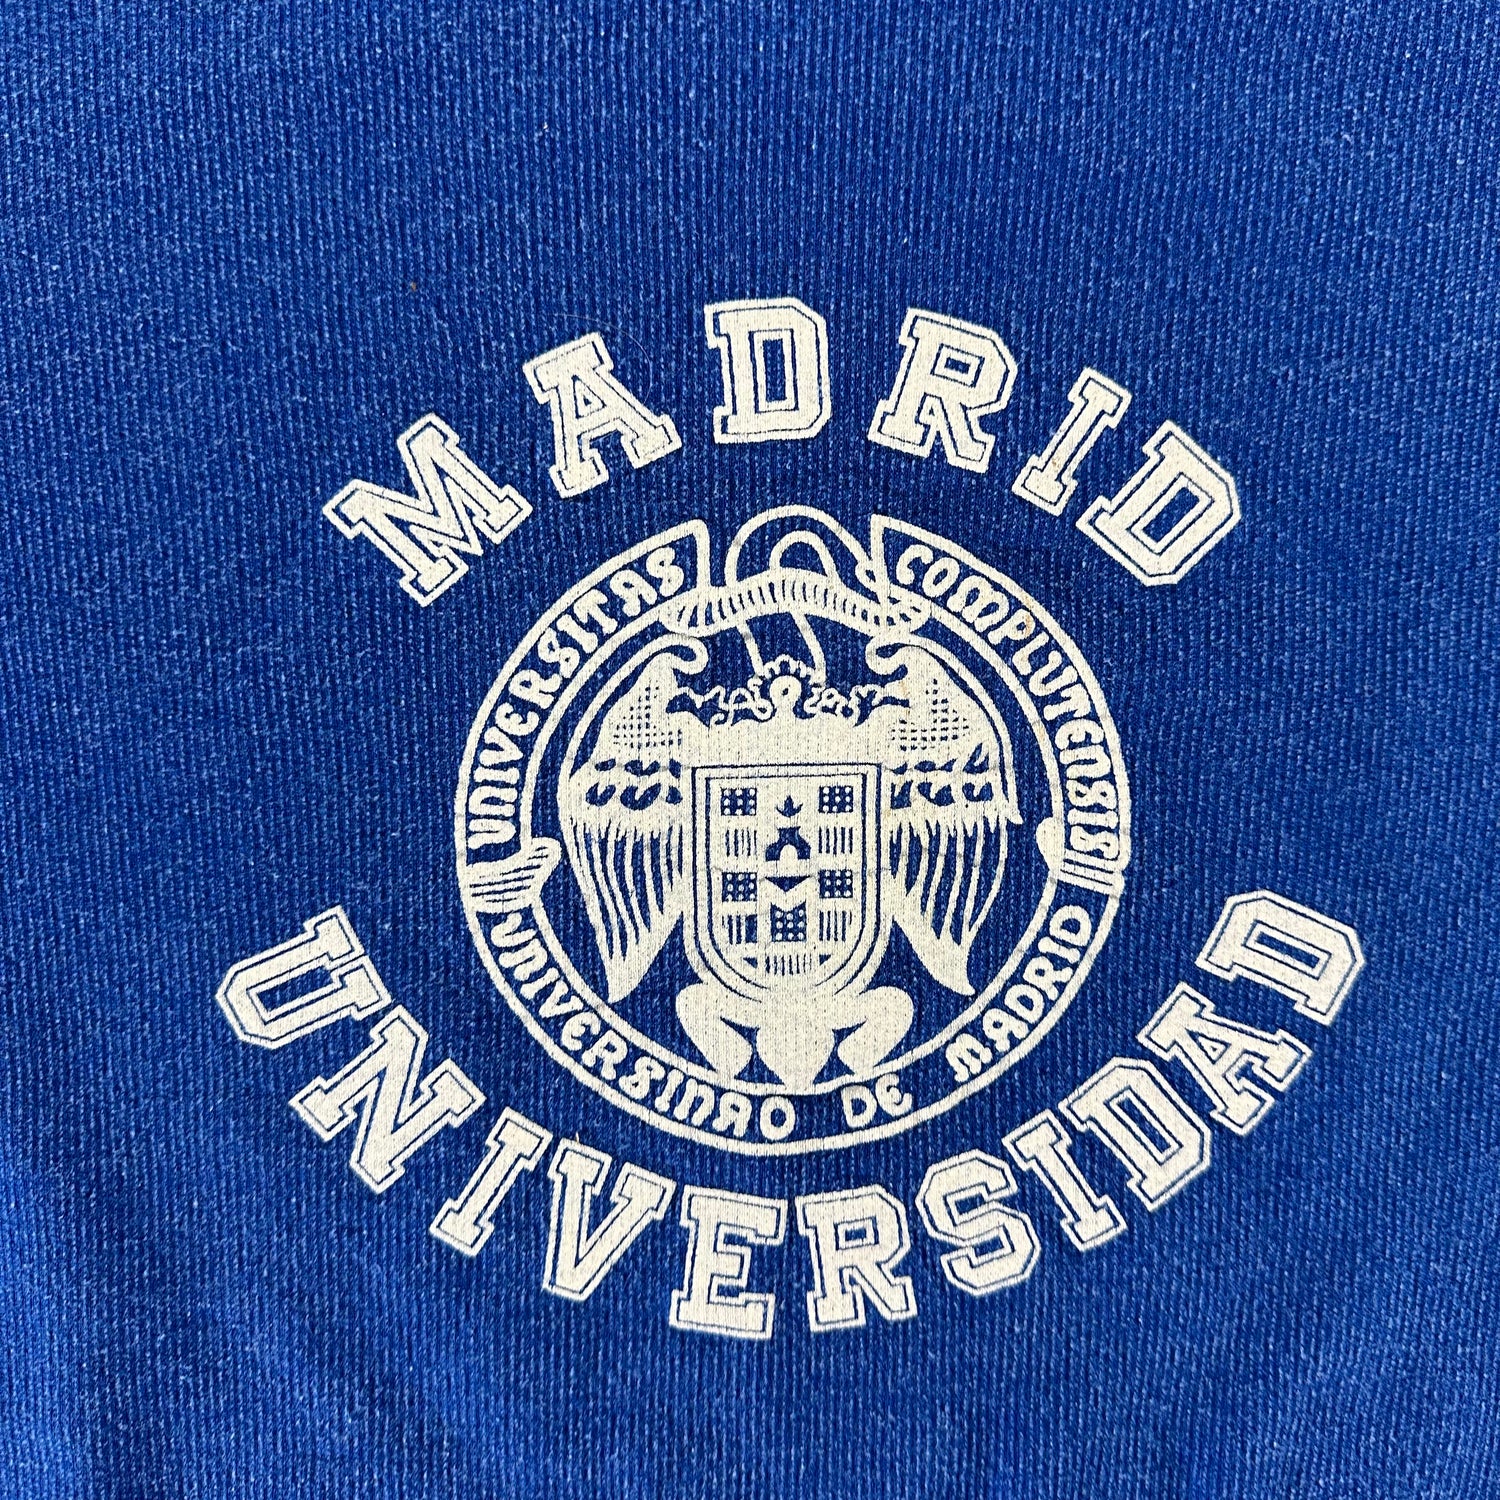 Vintage 1980s Madrid University Sweatshirt size Large